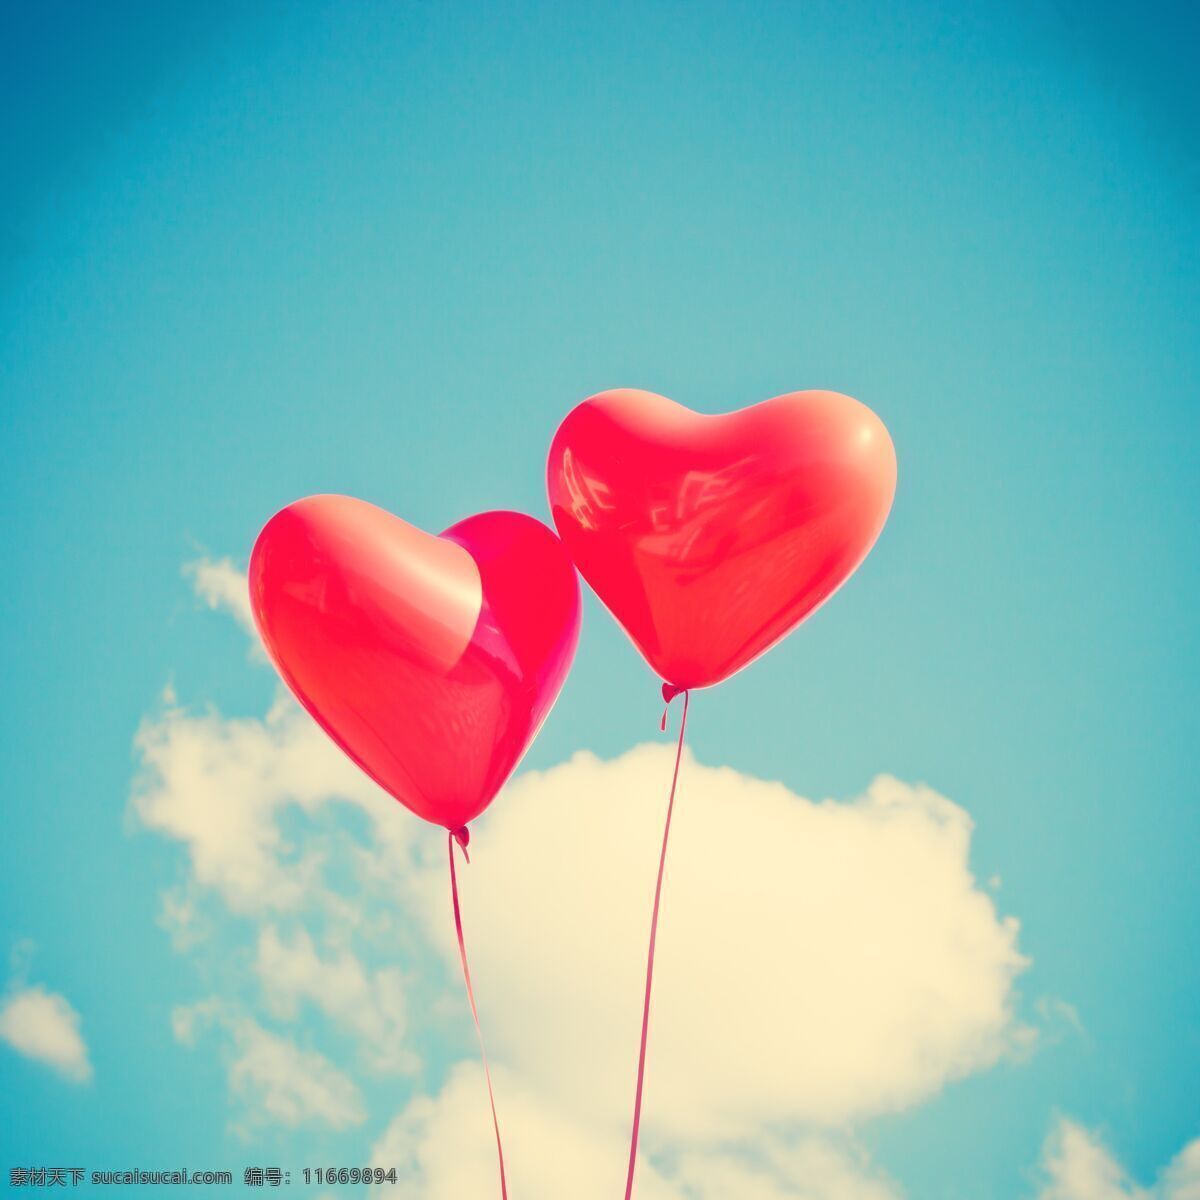 蓝天白云 浪漫情侣 两个 红色心形气球 爱心 爱情 唯美背景图